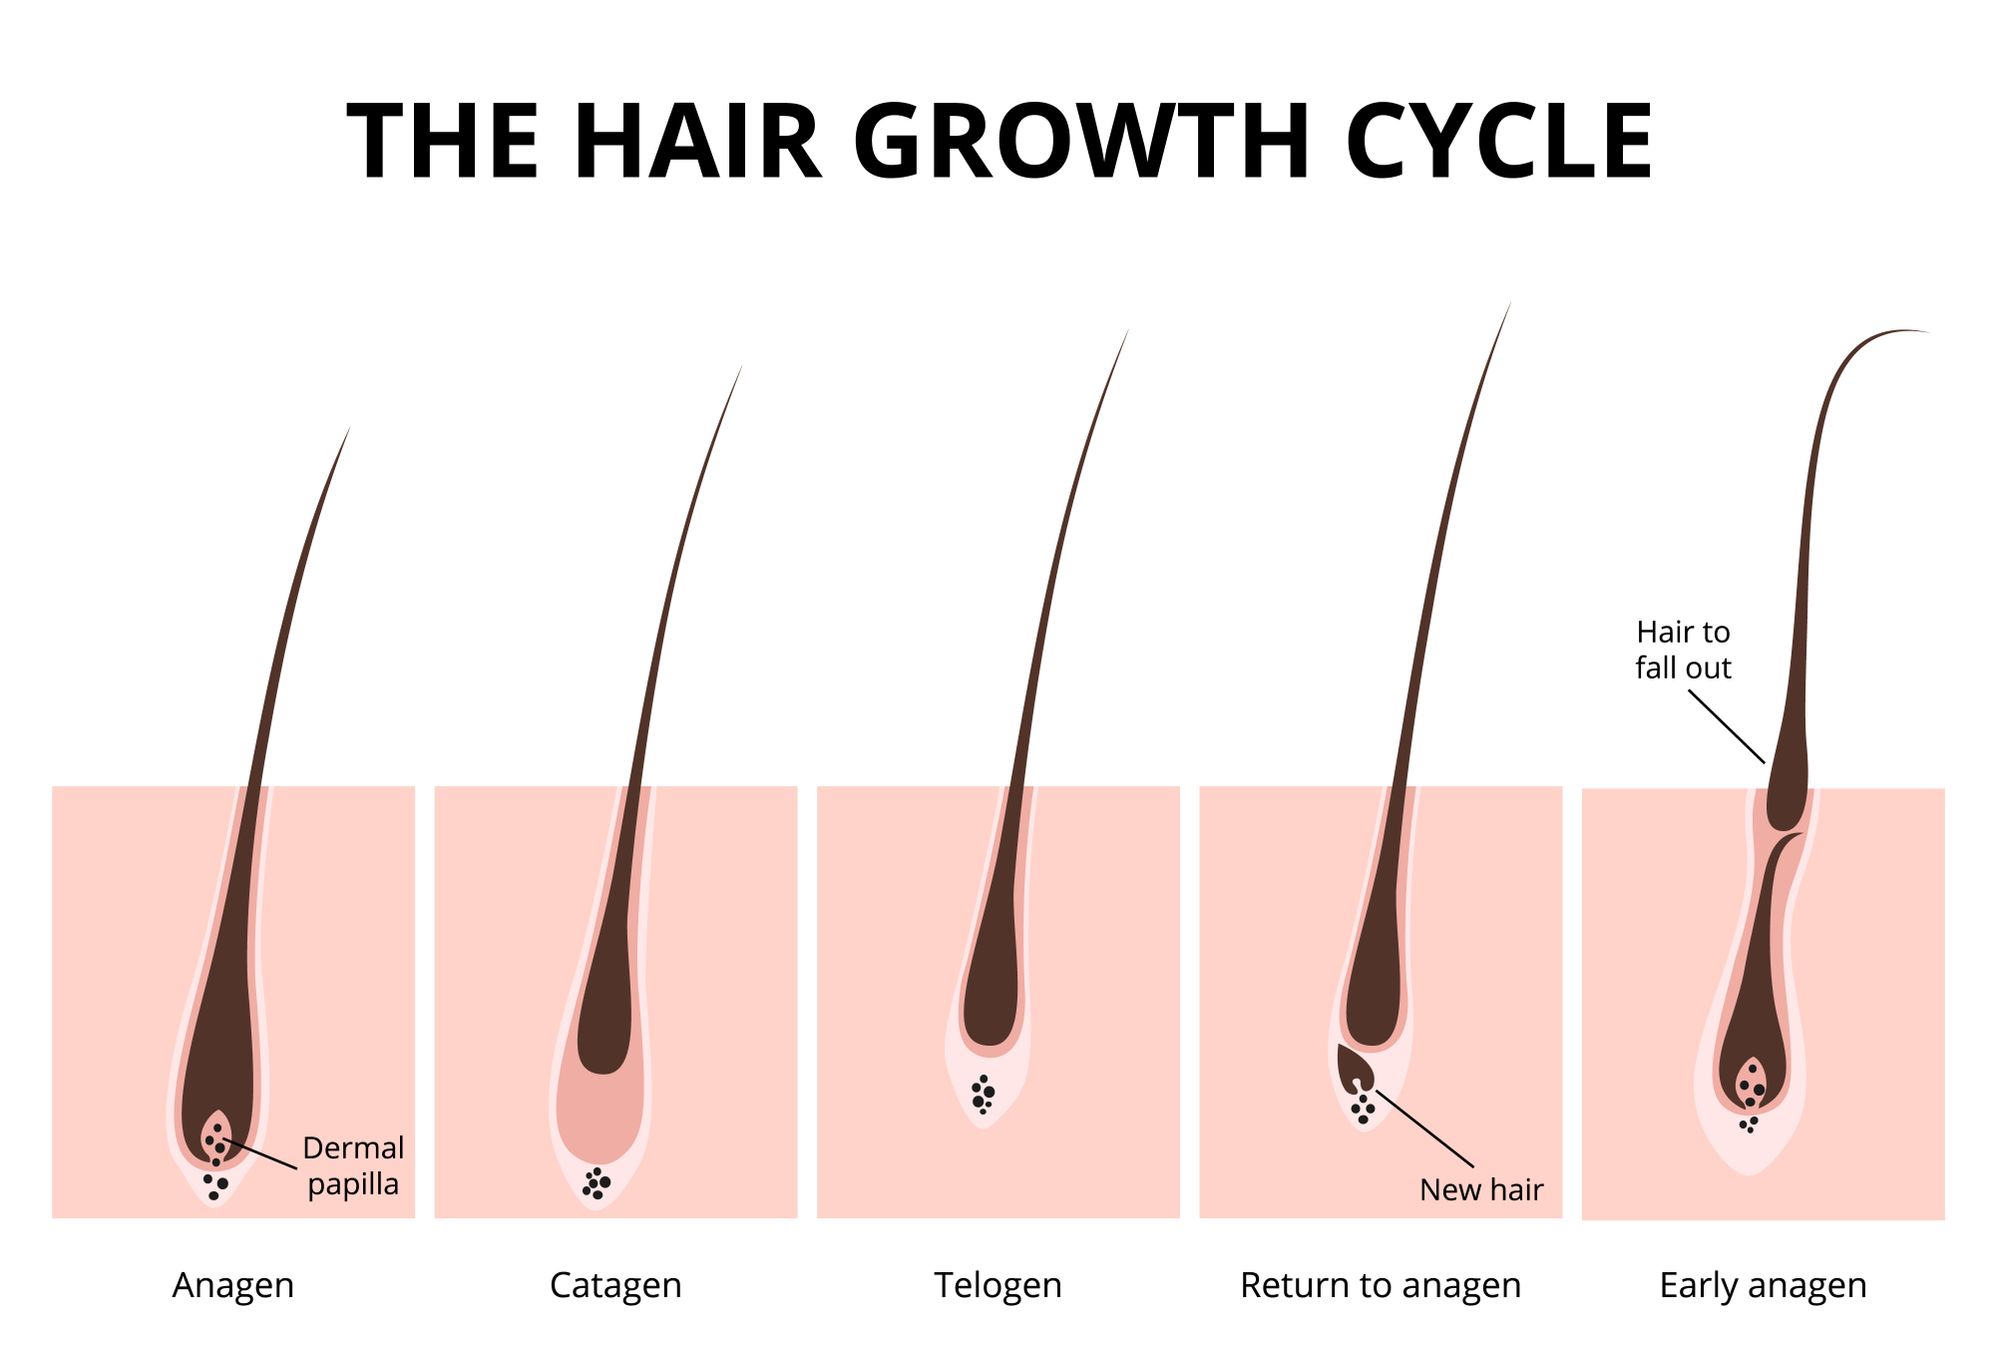 Hair growth cycle by Marochkina Anastasiia | www.shutterstock.com